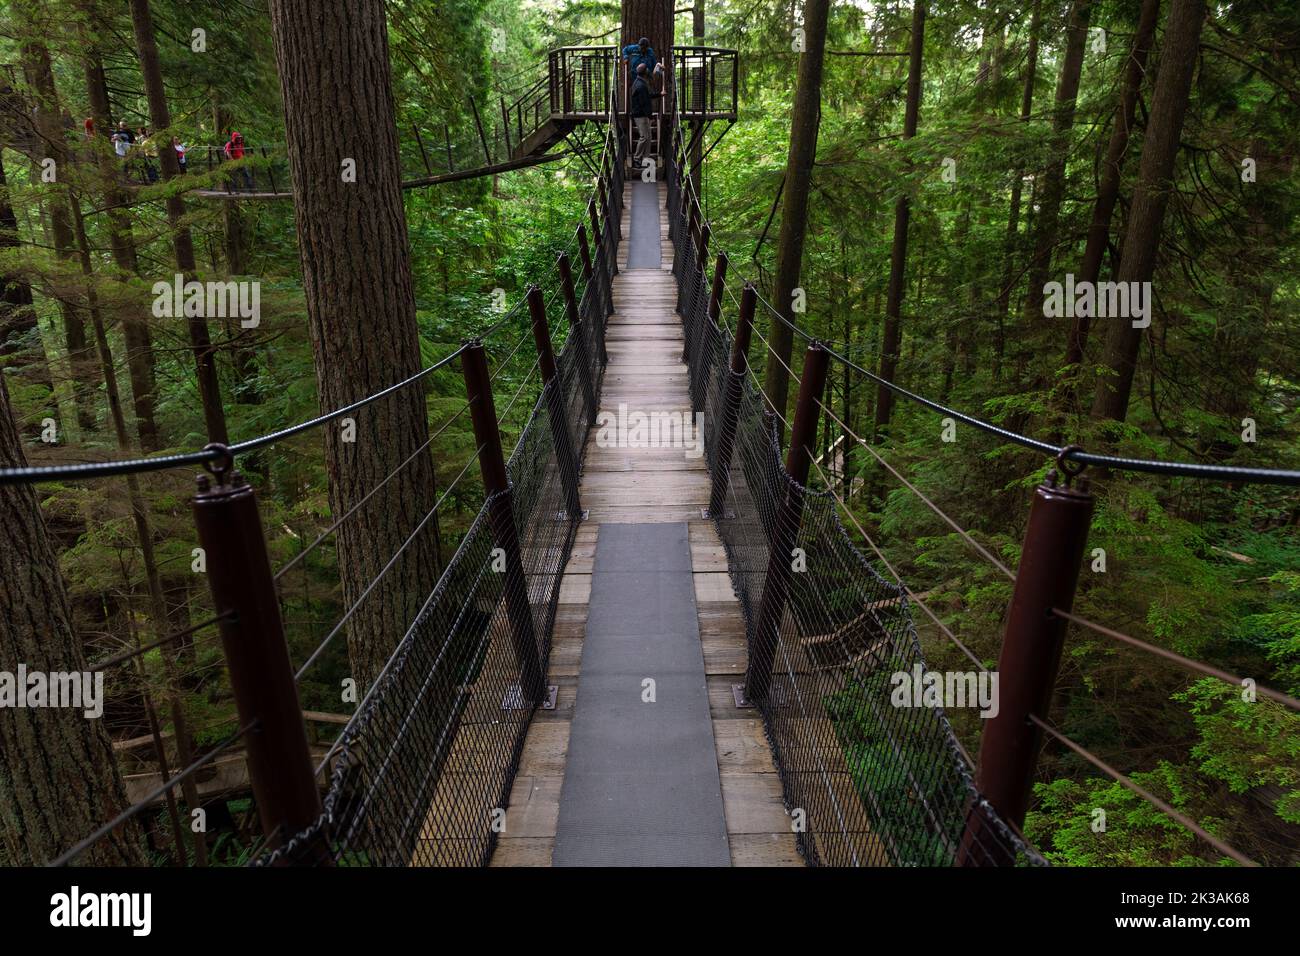 Hanging bridges inside Capilano Suspension Bridge Park, Vancouver, British Columbia, Canada. Stock Photo